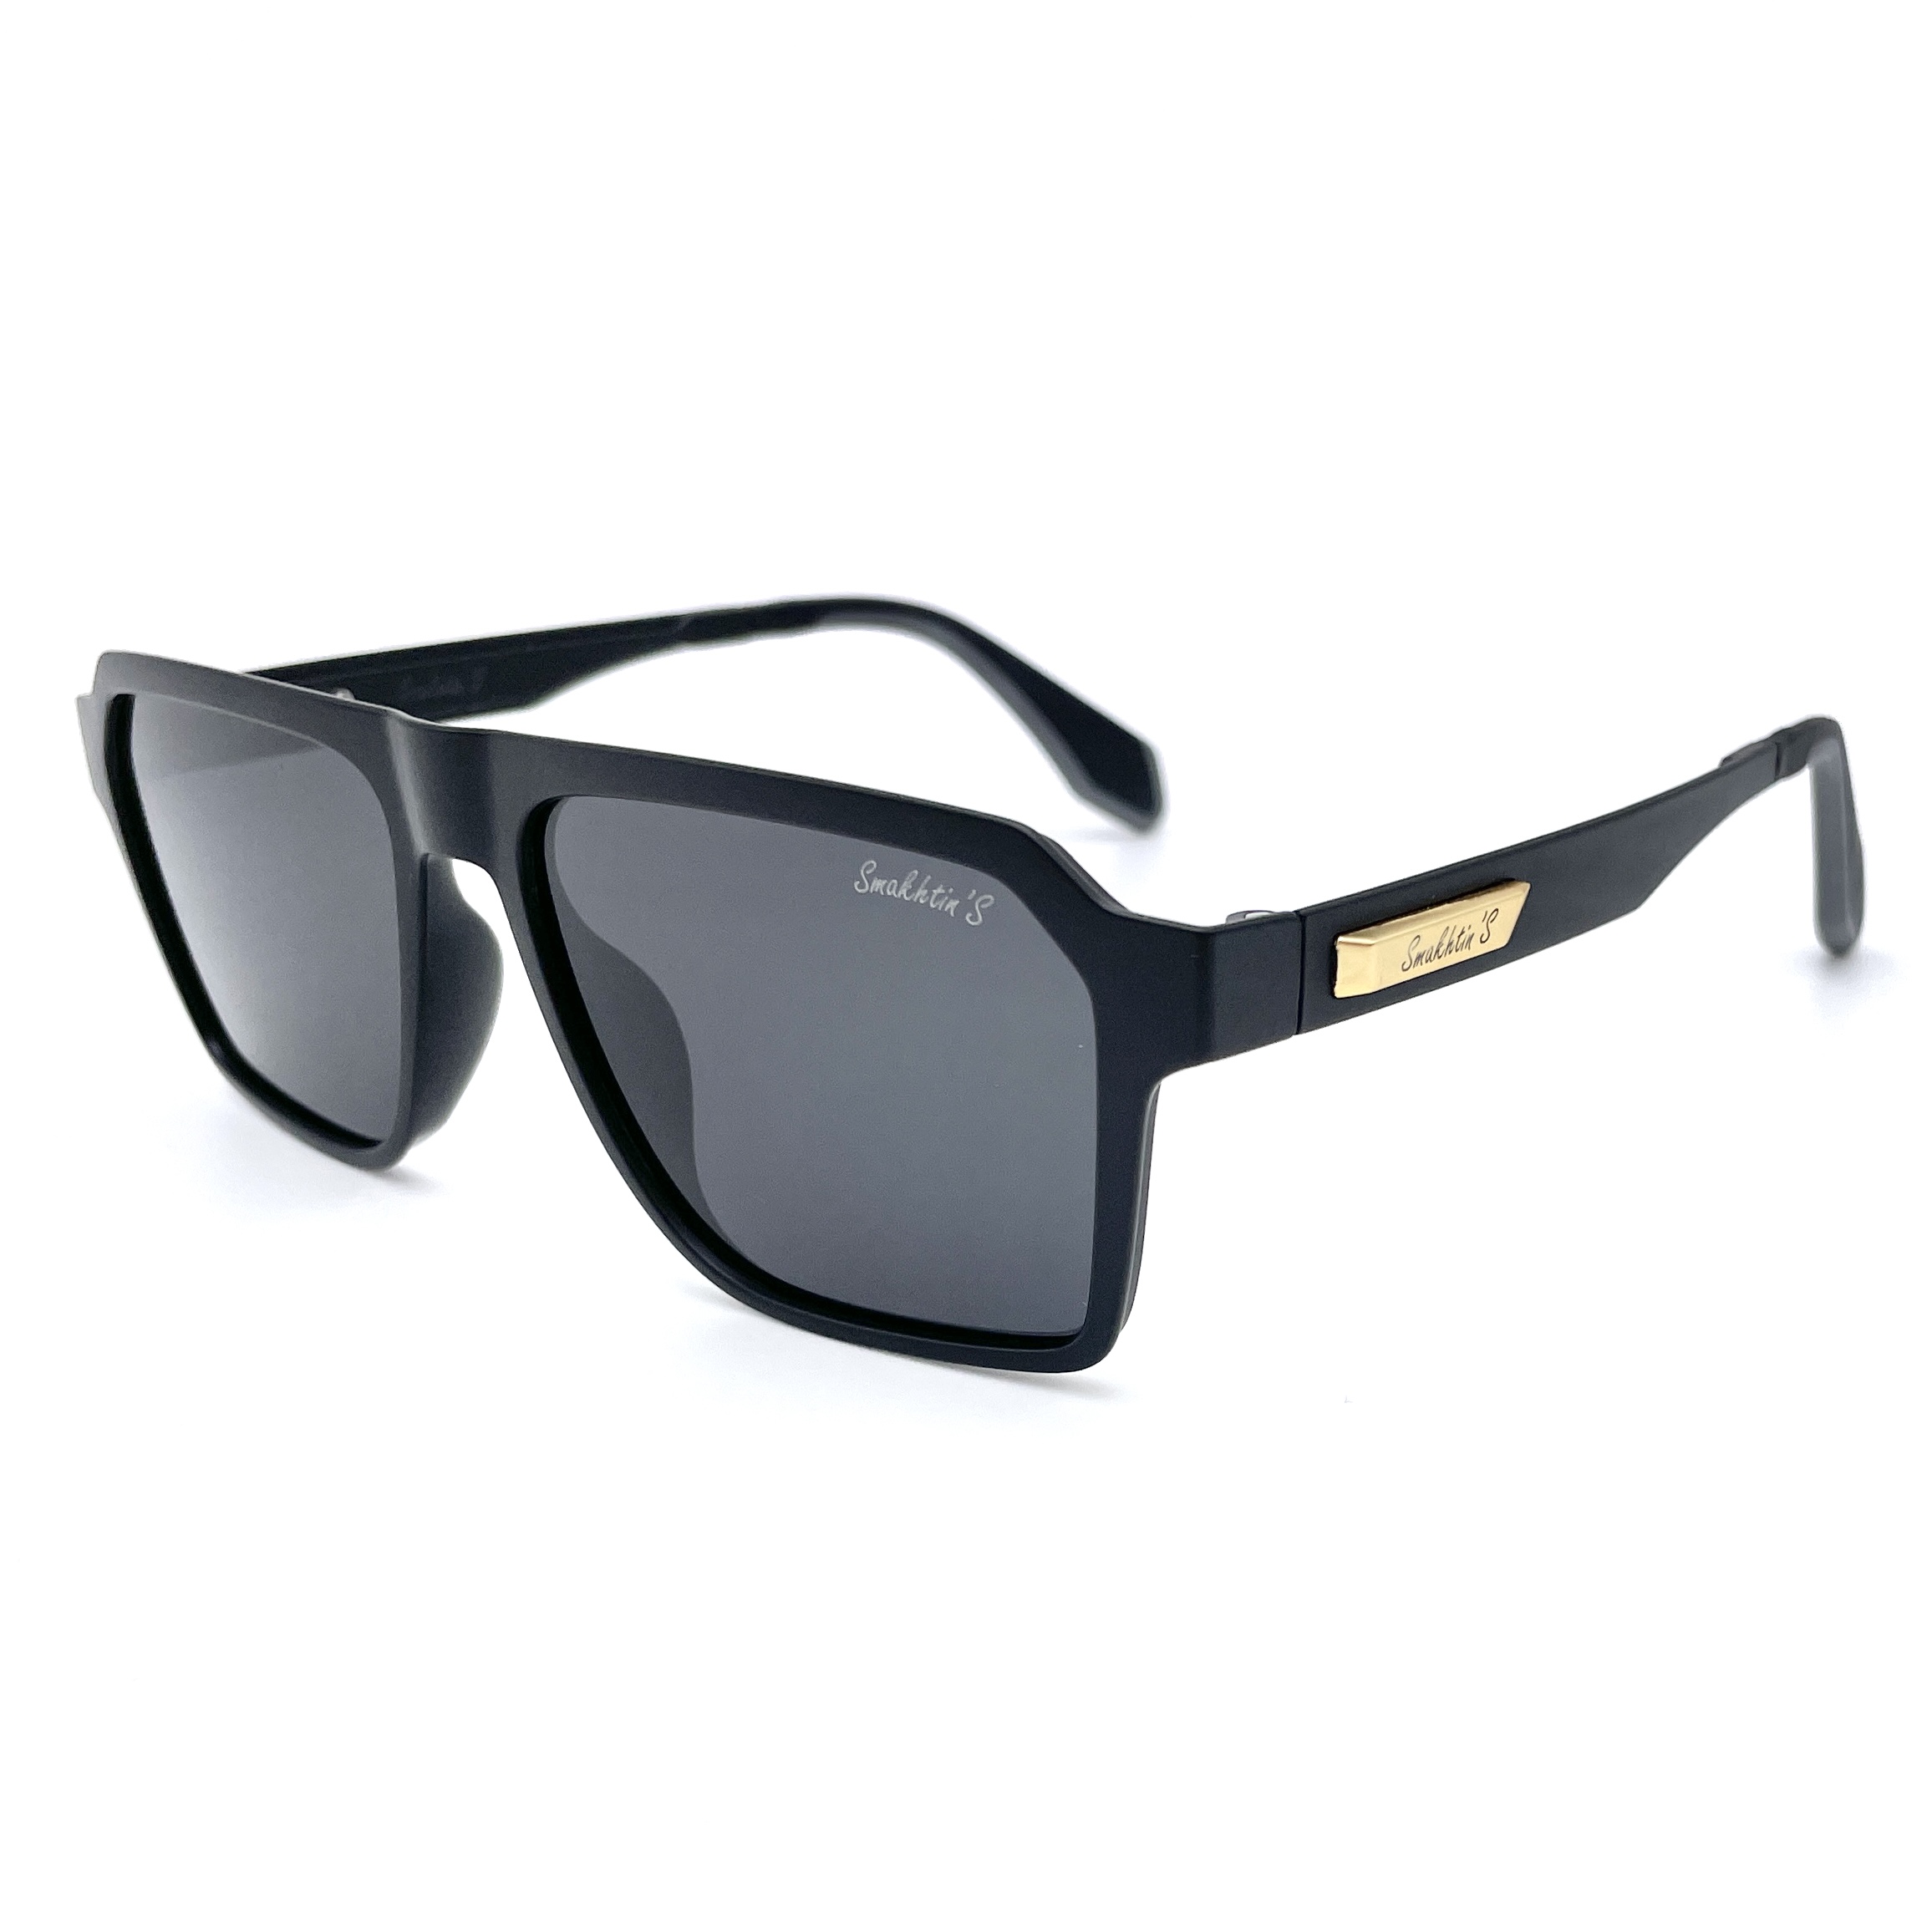 Солнцезащитные очки унисекс Smakhtin'S eyewear & accessories J896 черные